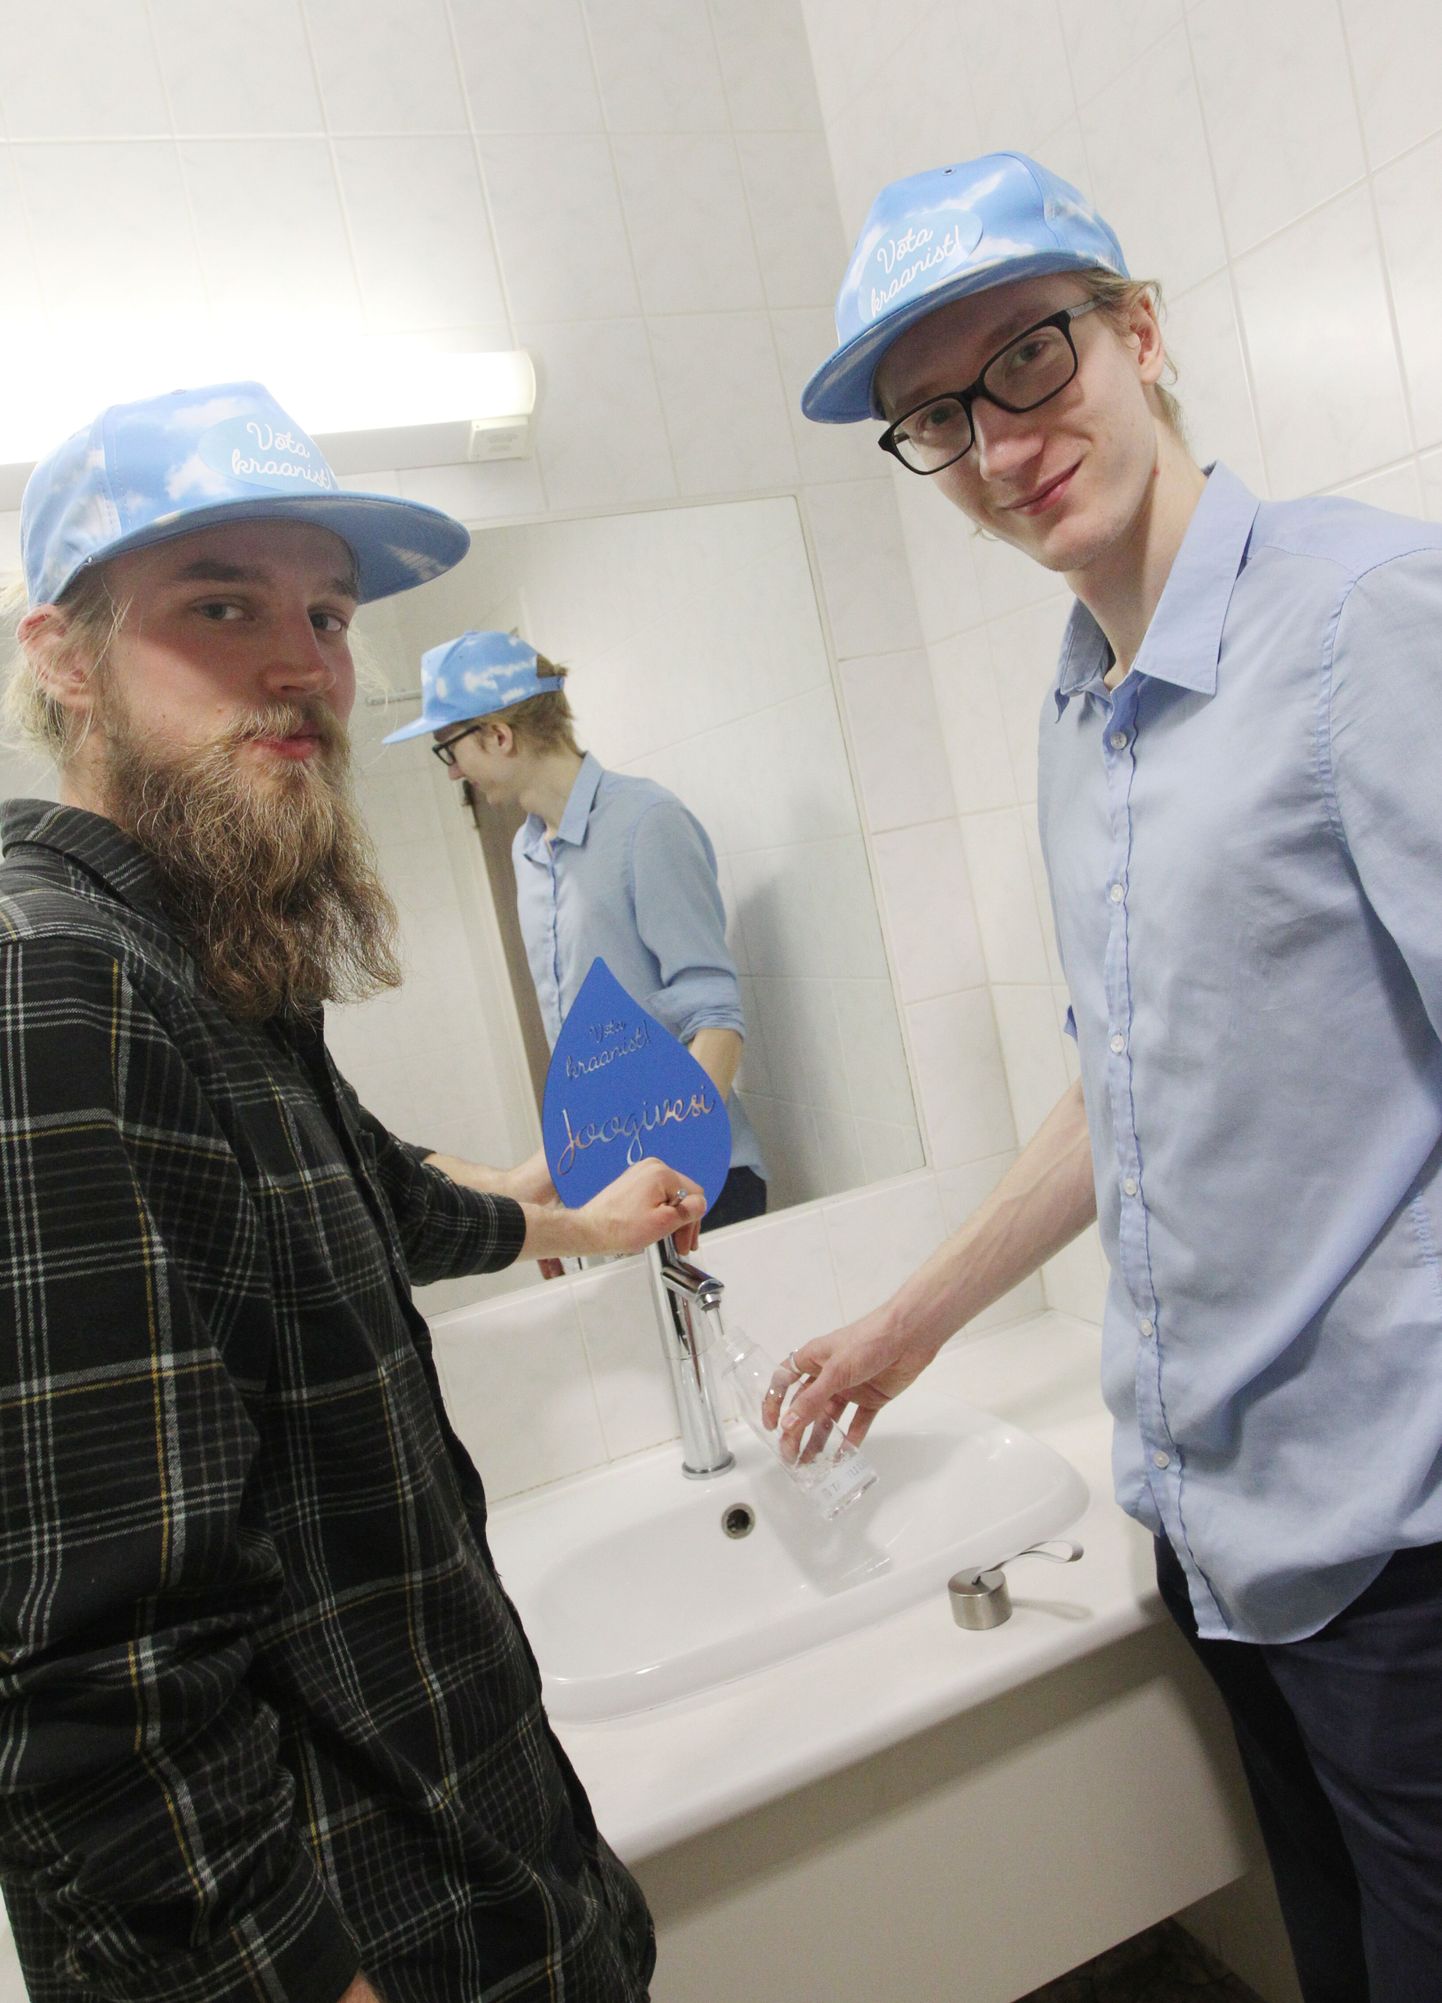 Projekti "Võta kraanist!" eestvedajad Artur Pata (vasakult) ja Kristjan-Julius Laak.